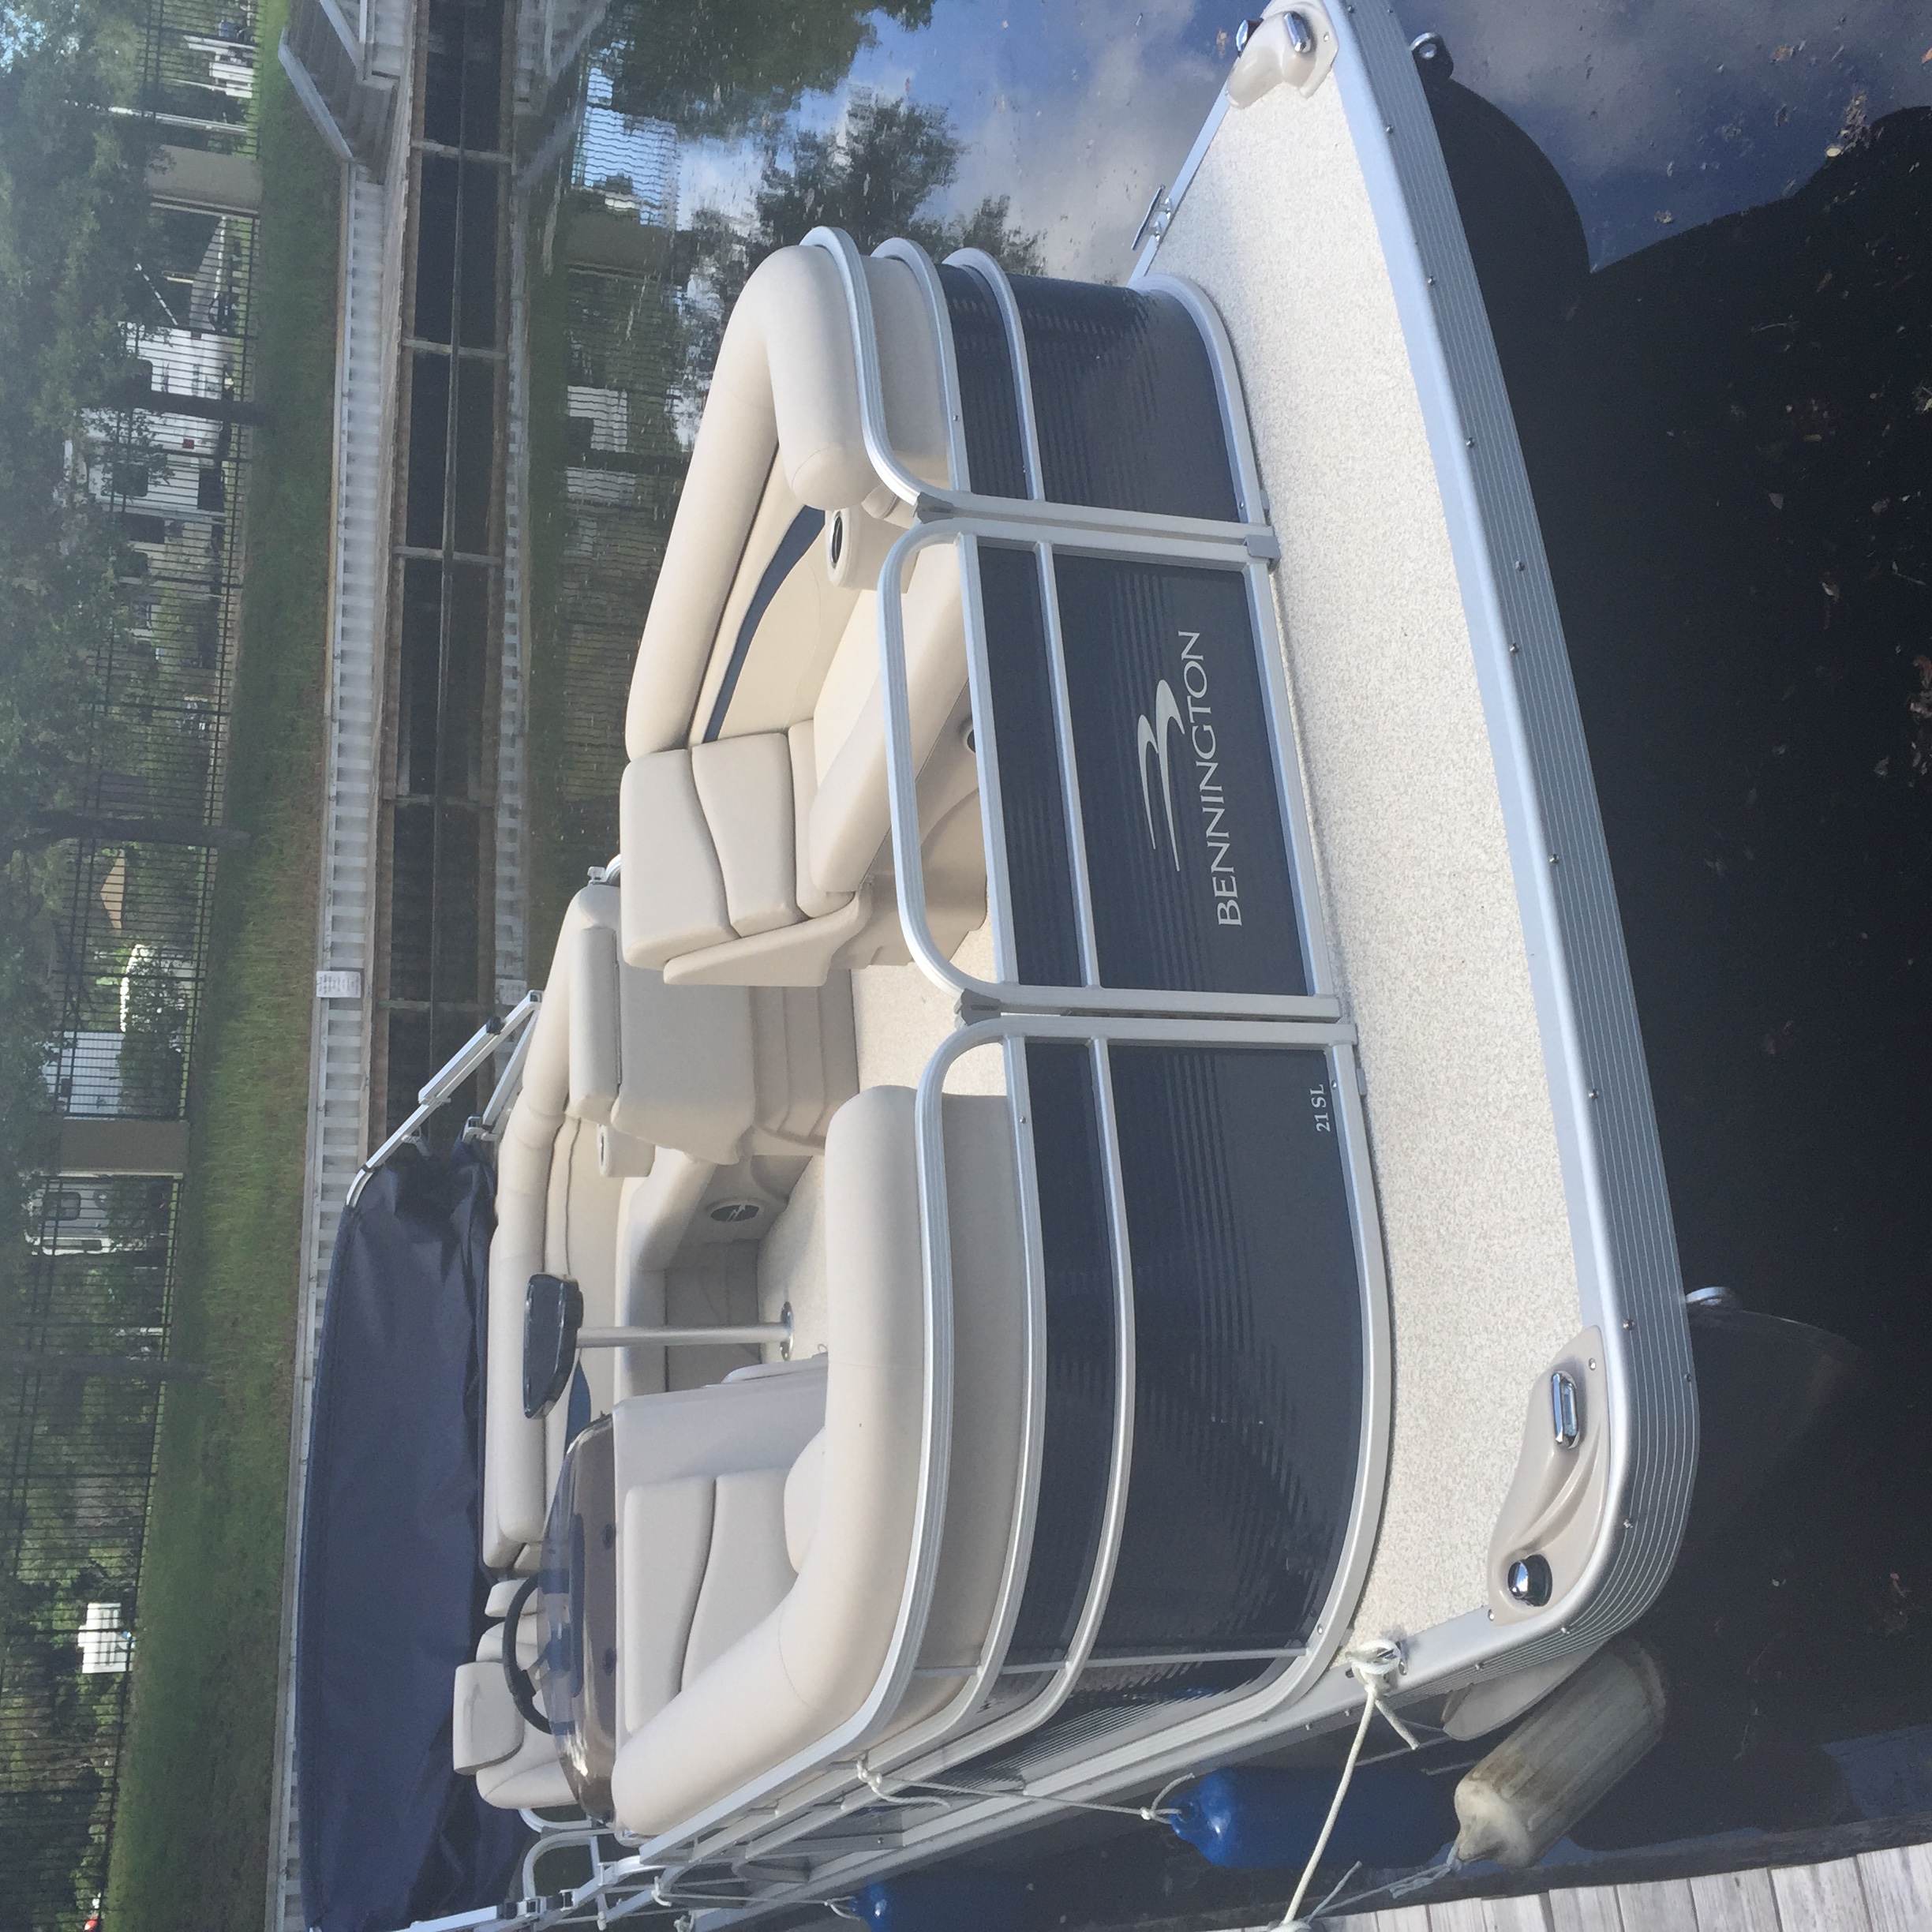 Used Bennington Pontoon Boats For Sale in Florida by owner | 2017 Bennington SL21